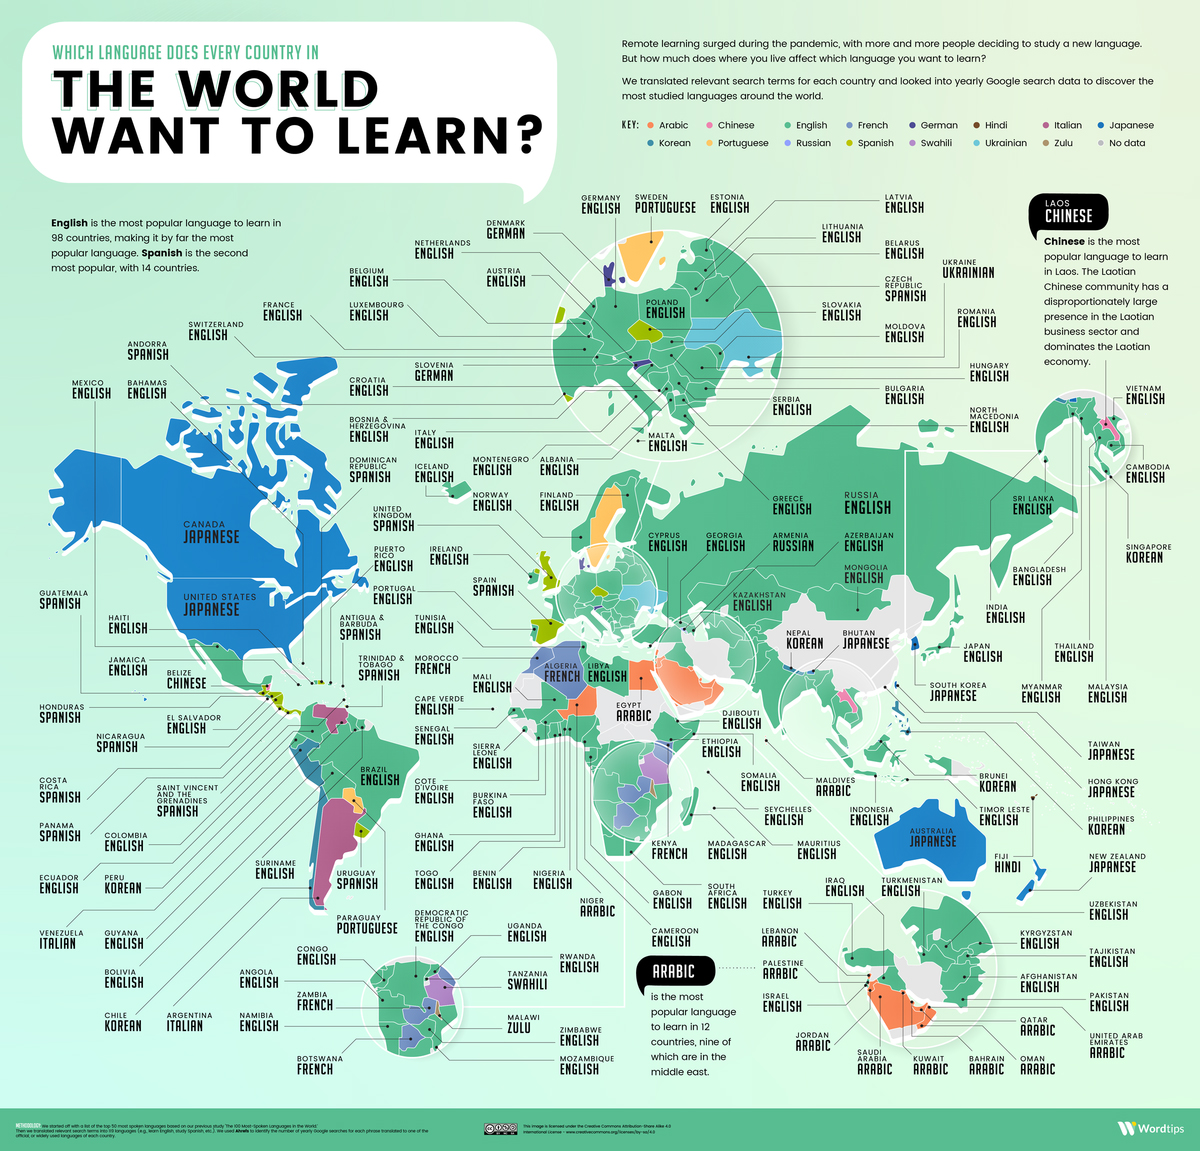 Ngôn ngữ mà các nước muốn học nhất infographic